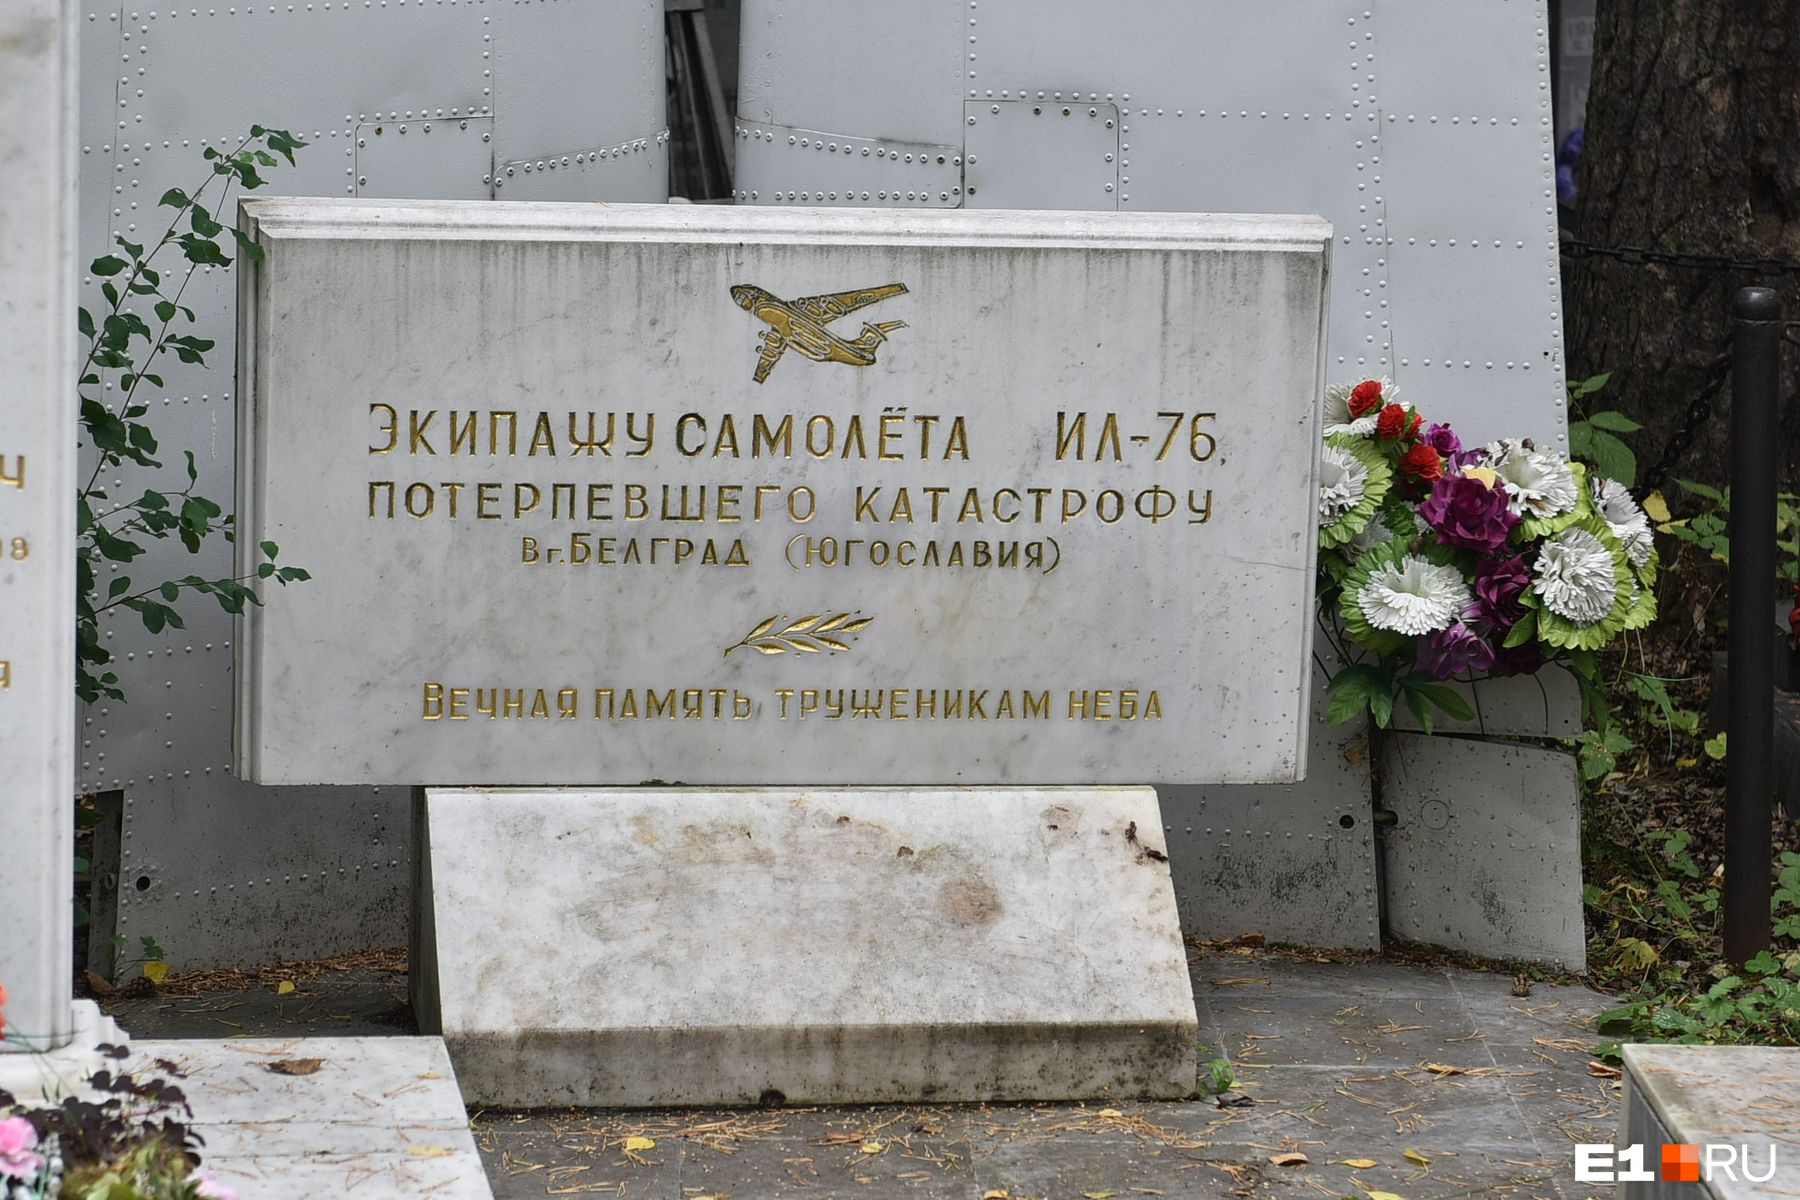 «Аллея 90-х» продолжается мемориалом уральскому экипажу самолета Ил-76, потерпевшего крушение в Белграде. Самолет садился в крайне тяжелых погодных условиях, никто не выжил